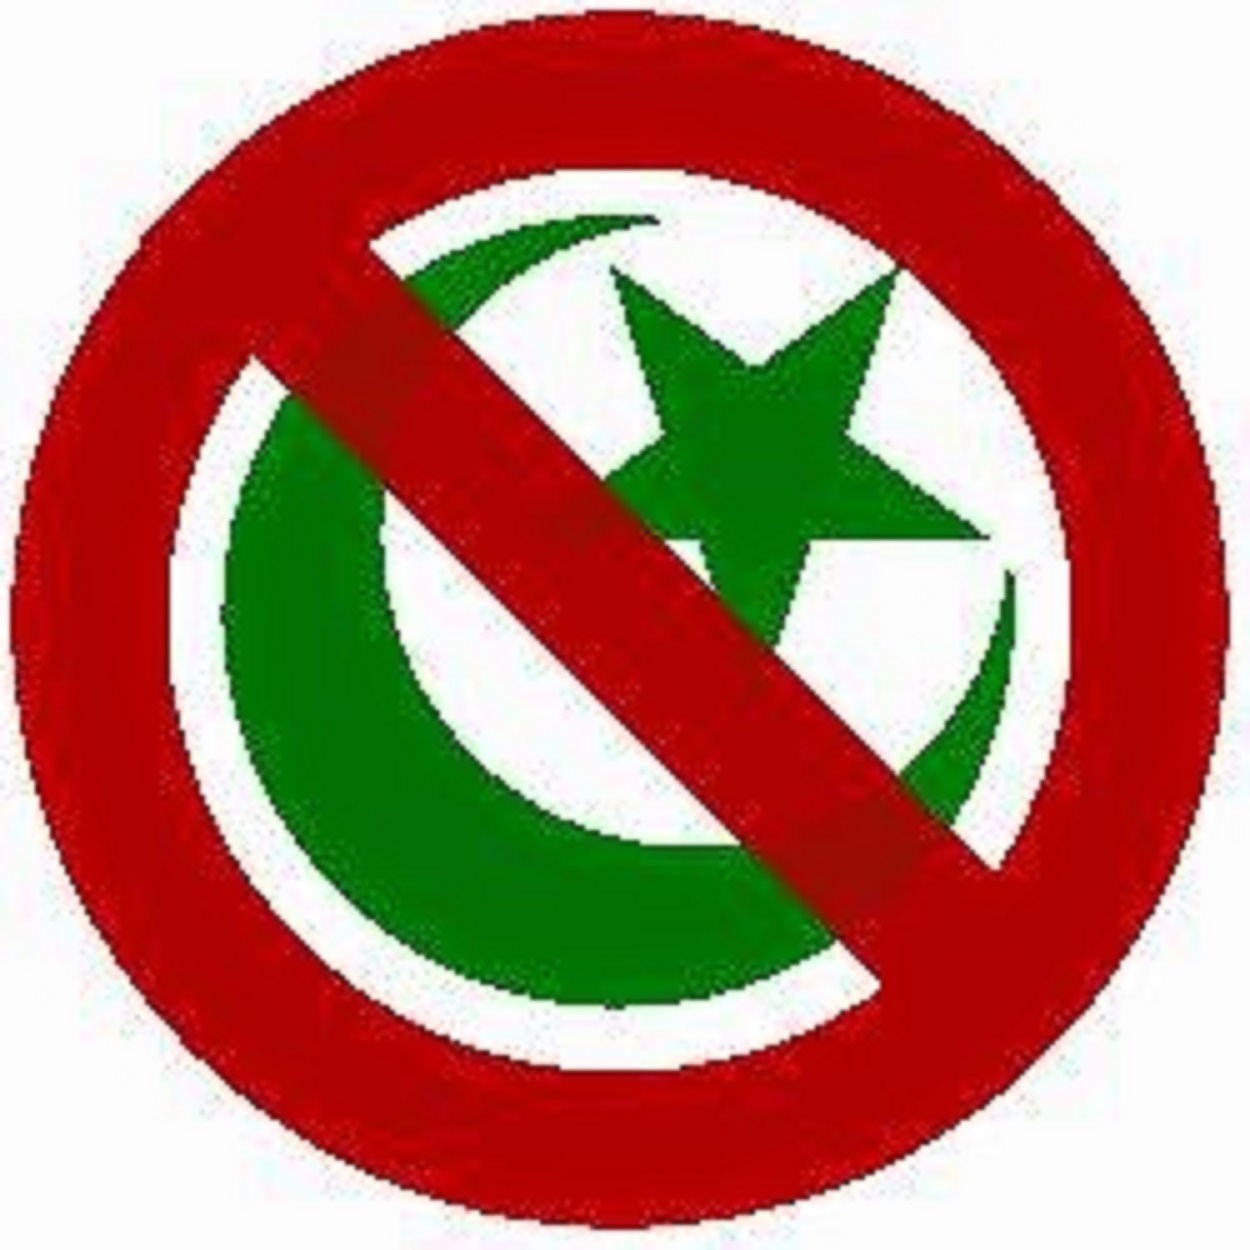 NO ISLAM